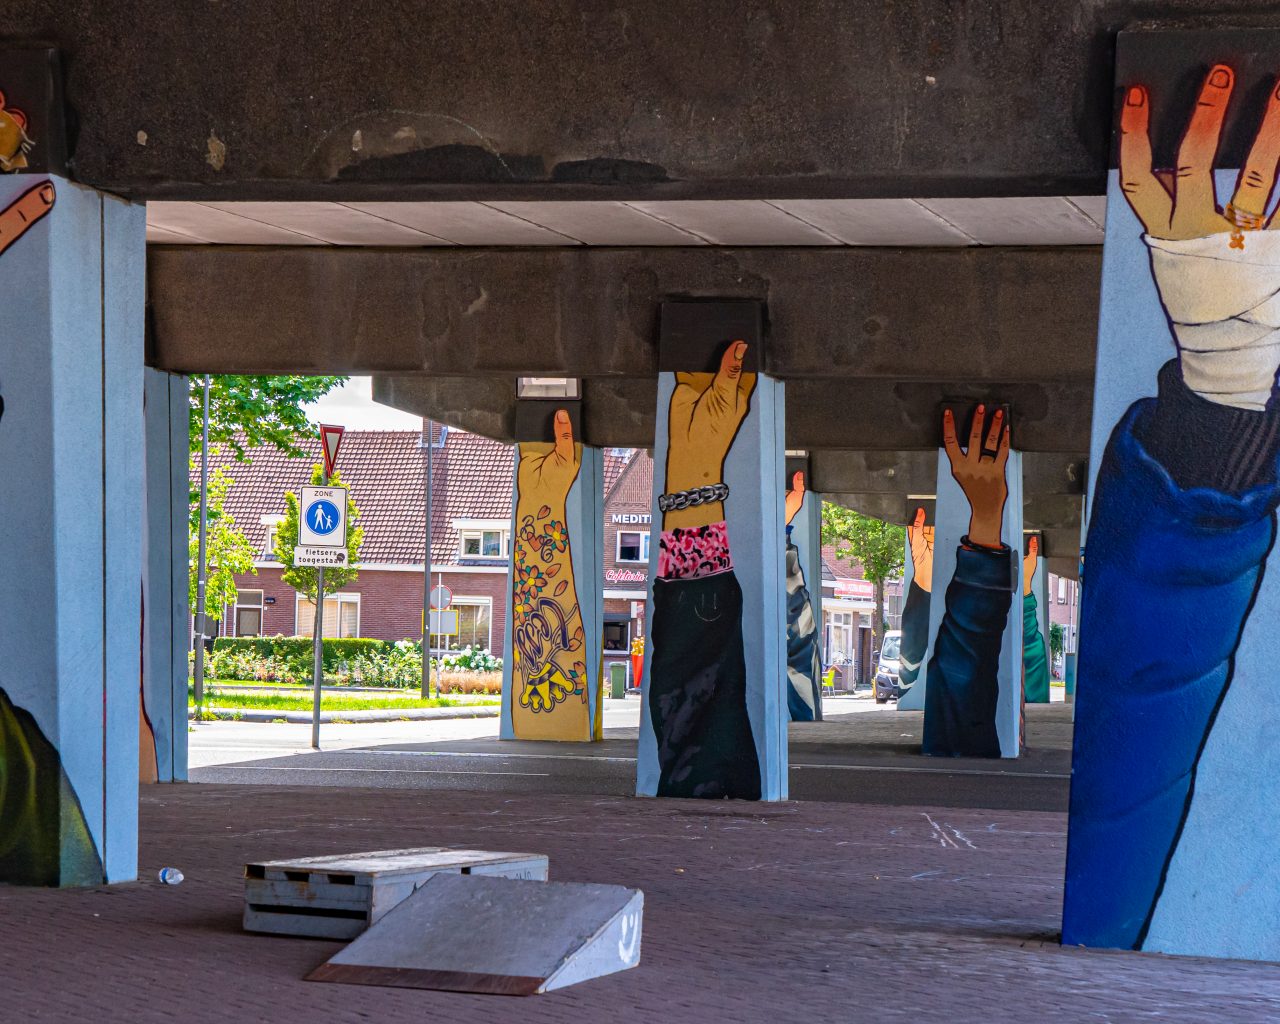 Handen-graffiti-onder-viaduct-Beukenlaan-Eindhoven